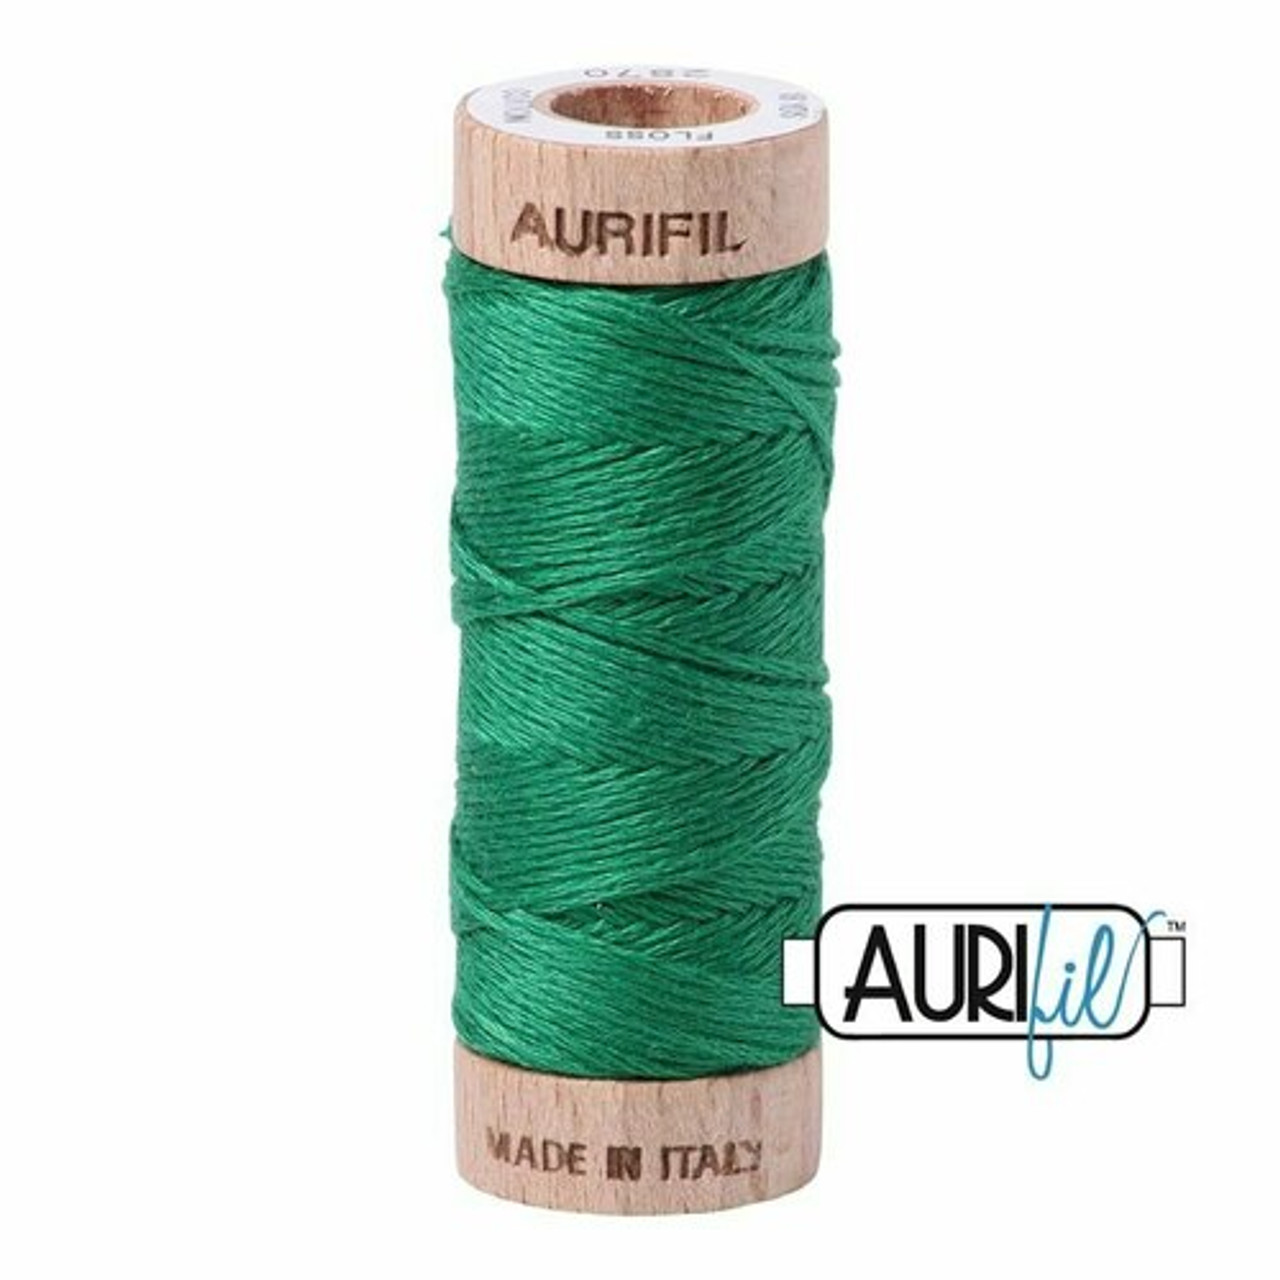 Aurifil 2870 - Green